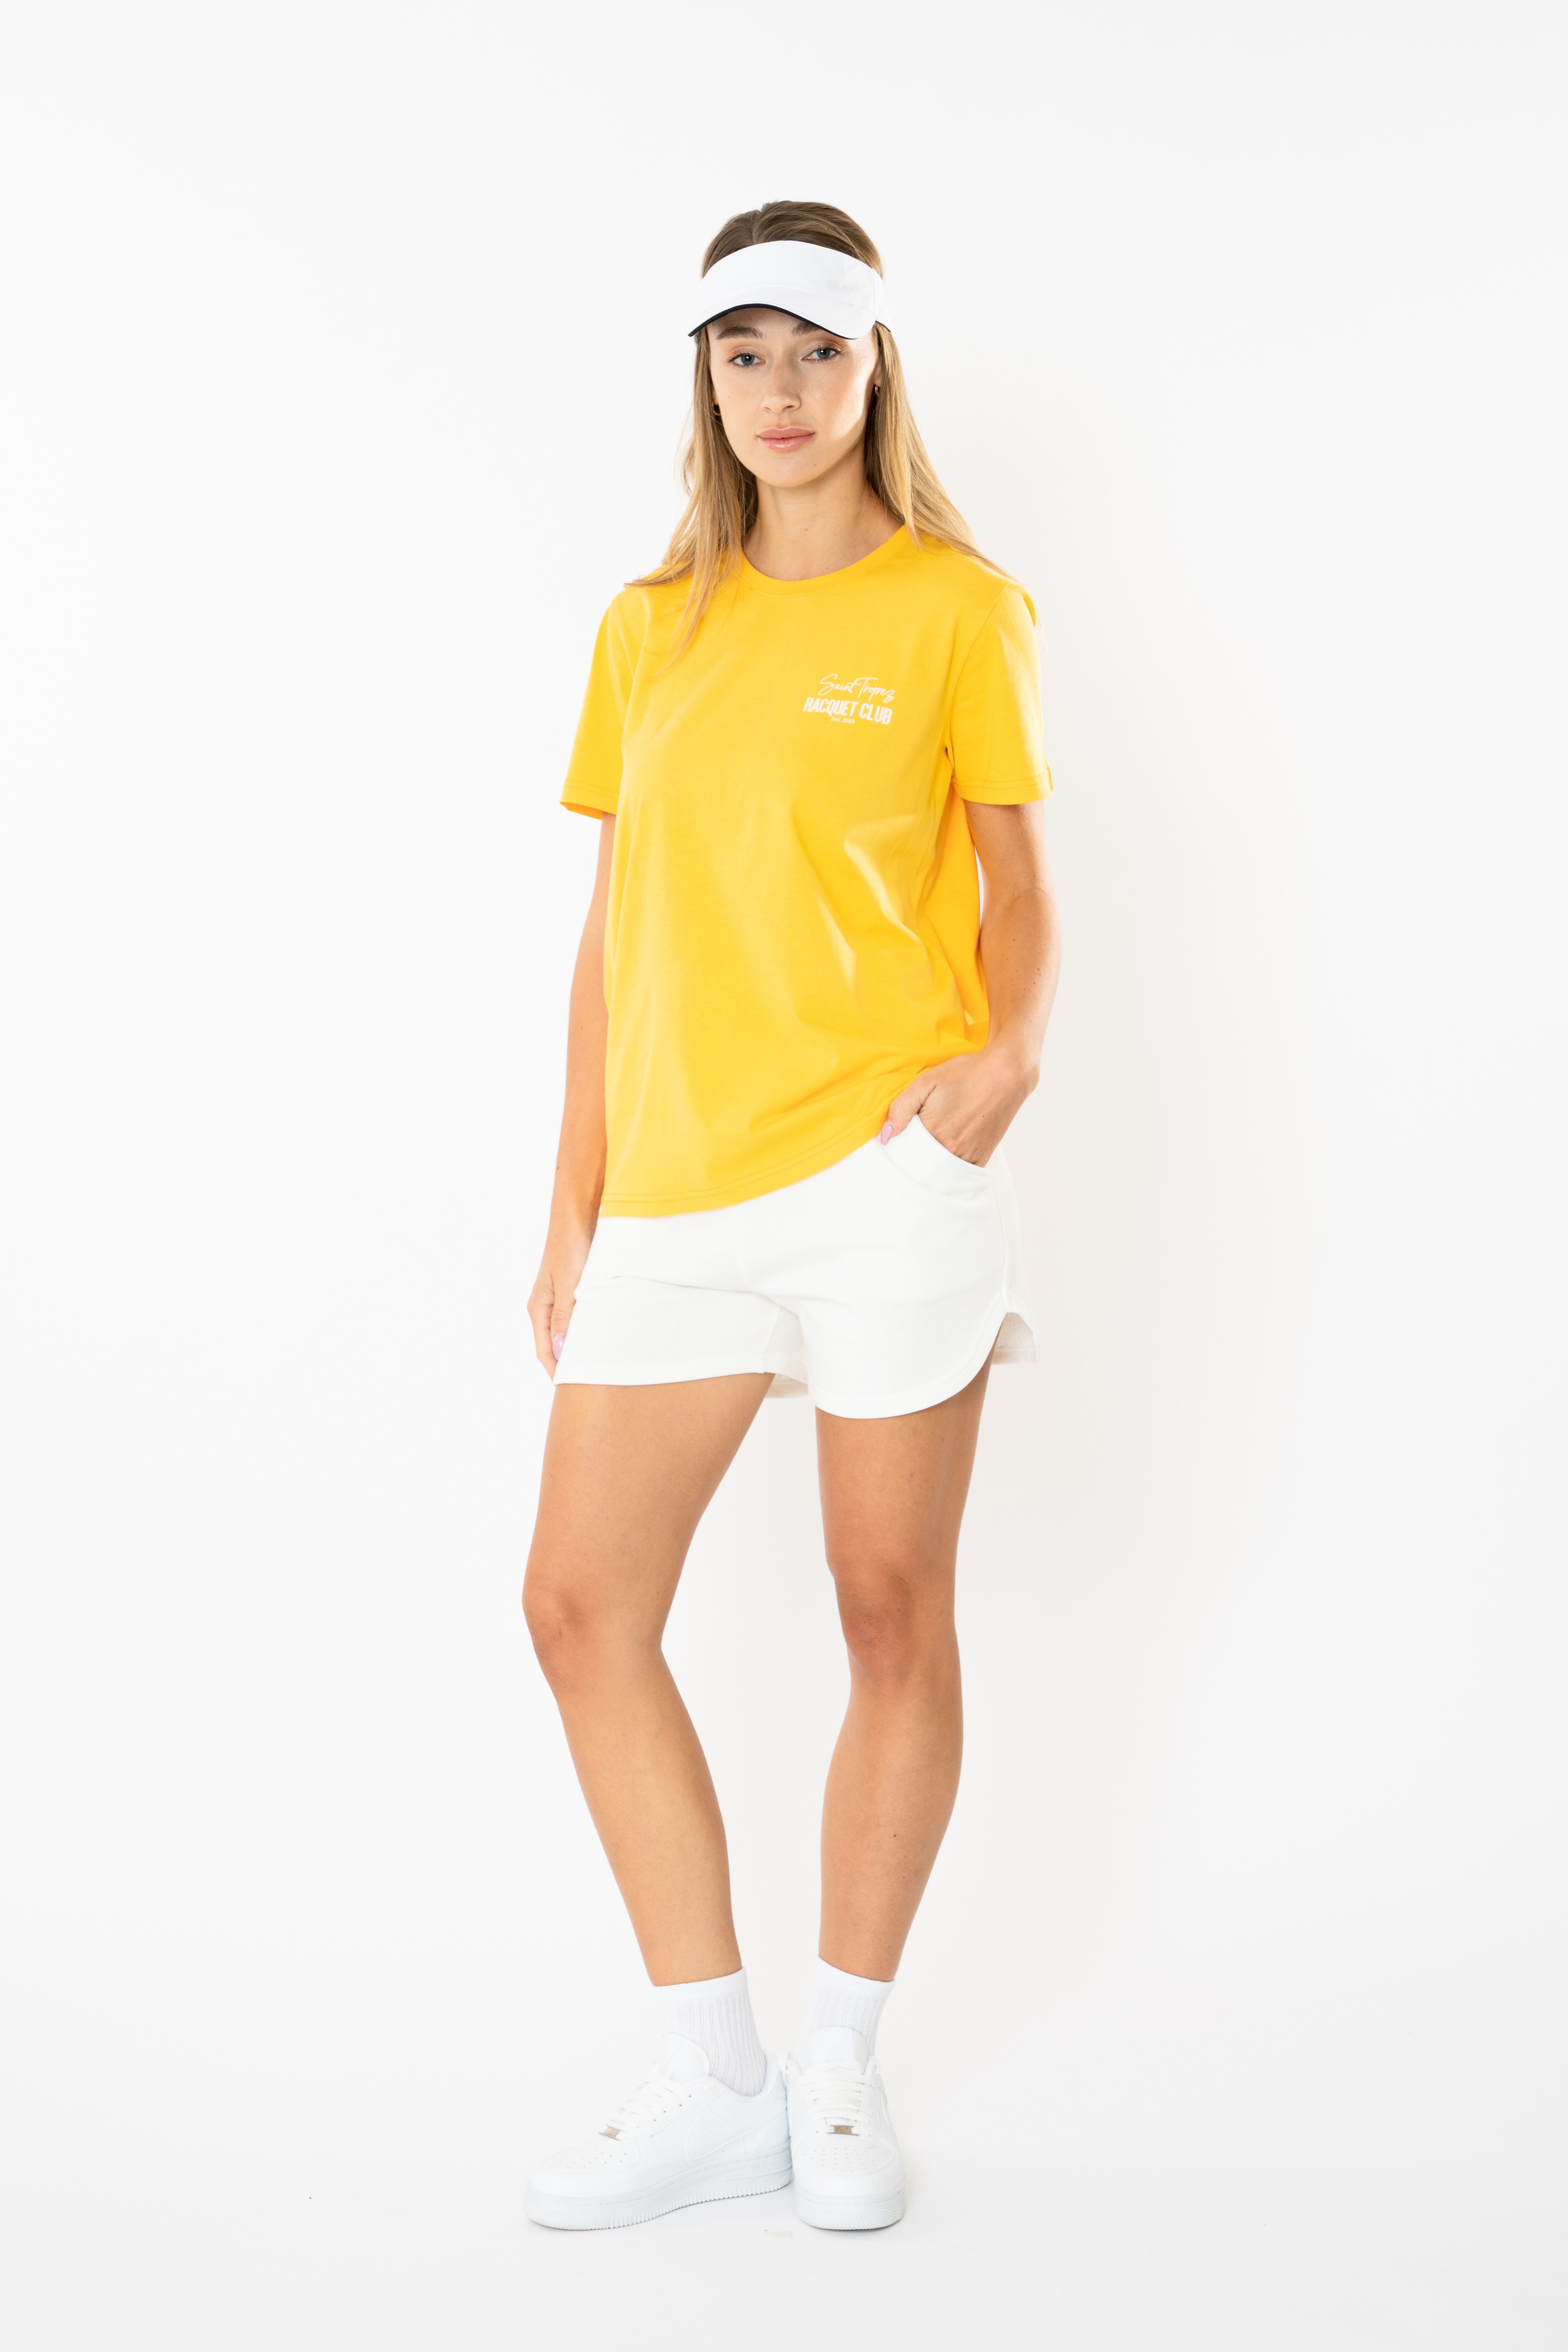 Racquet Club Regular T-Shirt Kadın - Sarı